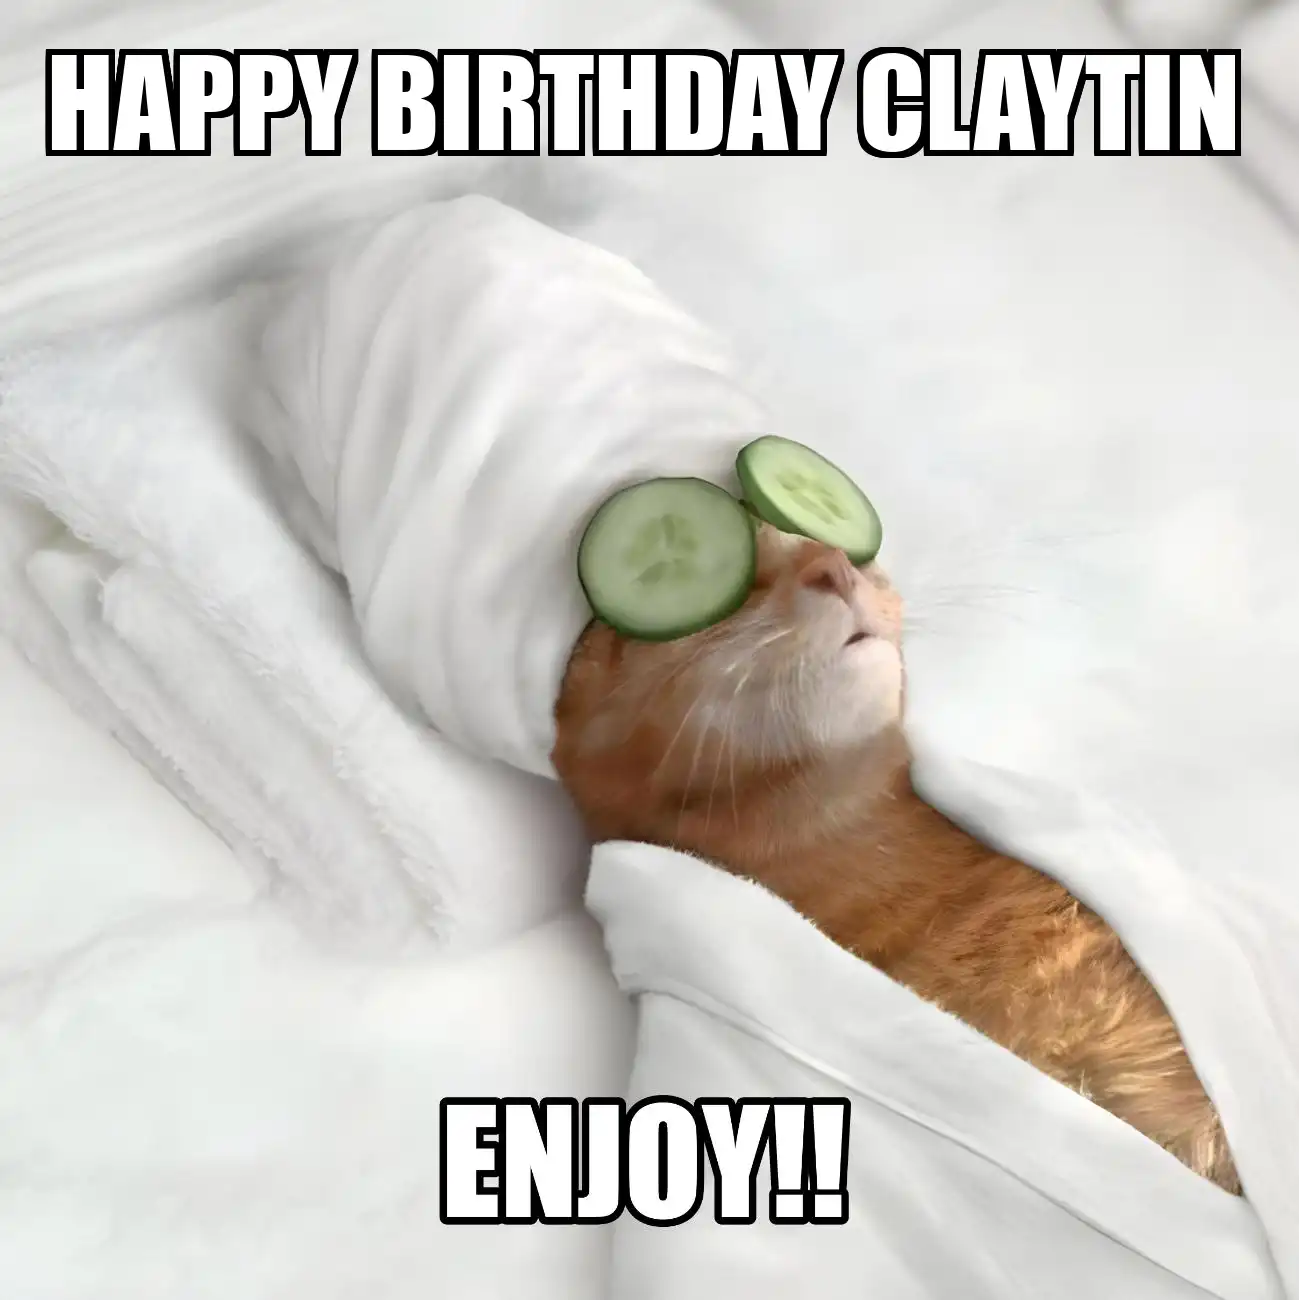 Happy Birthday Claytin Enjoy Cat Meme